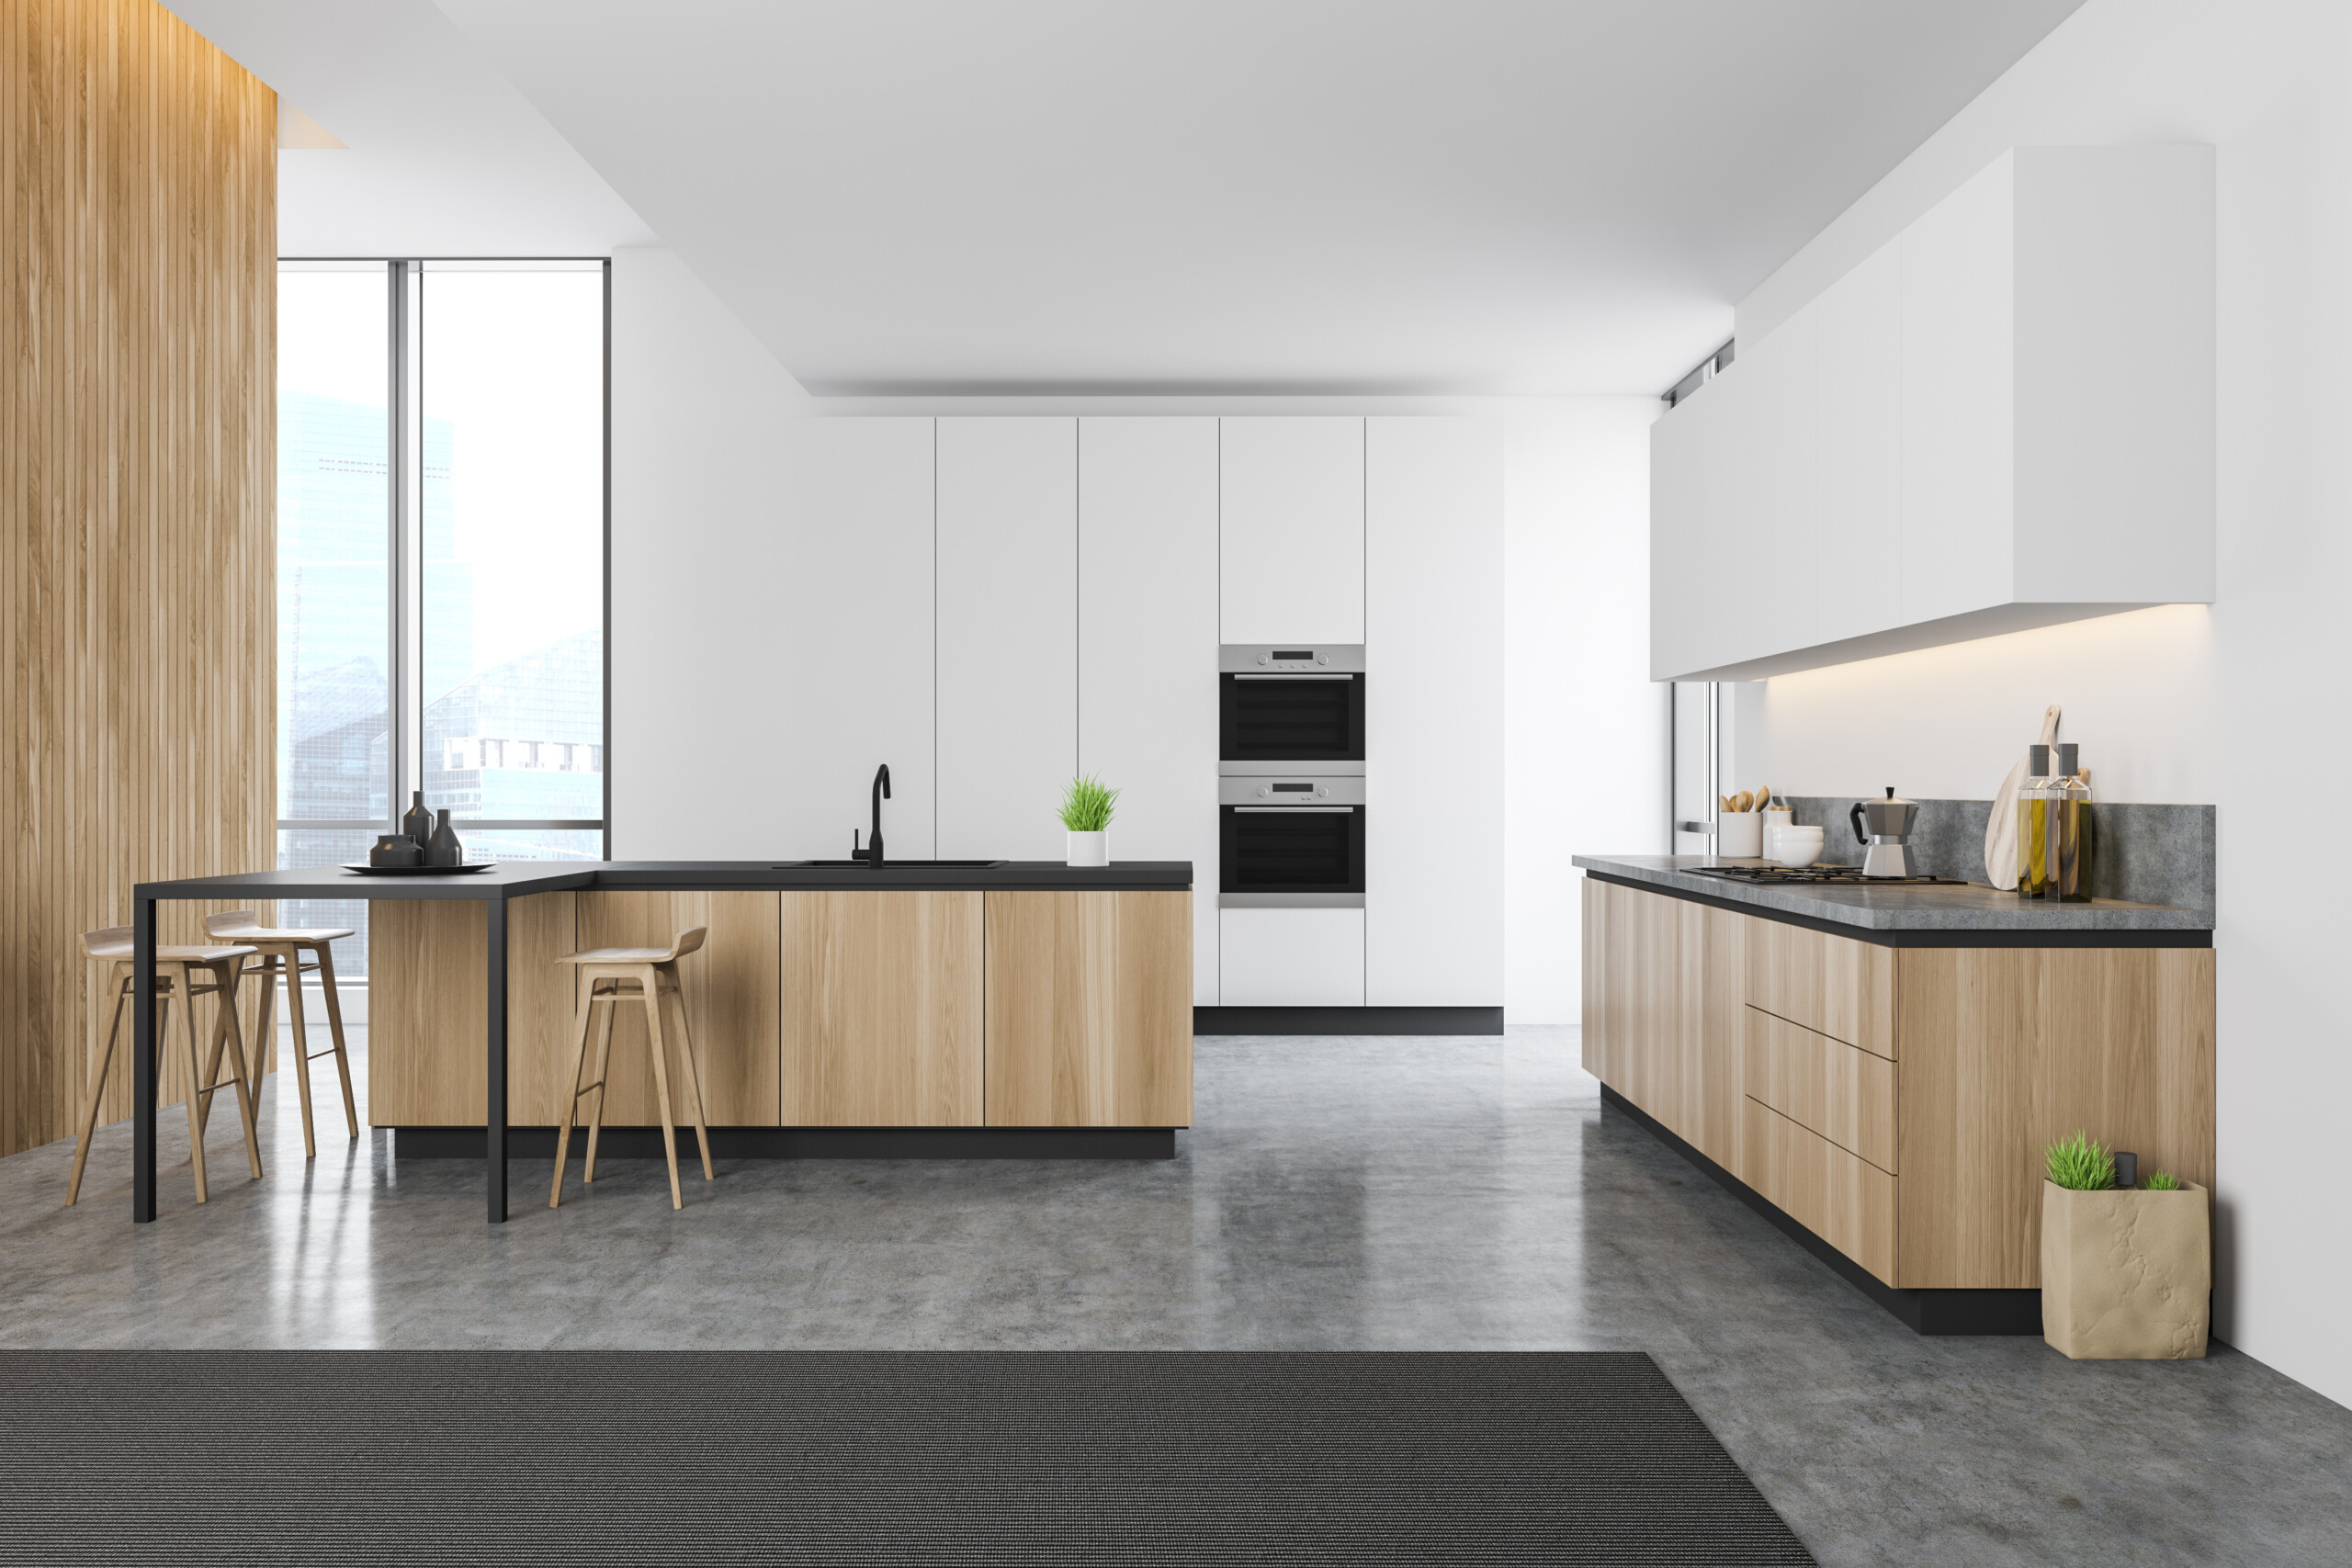 kitchen floor design industry report